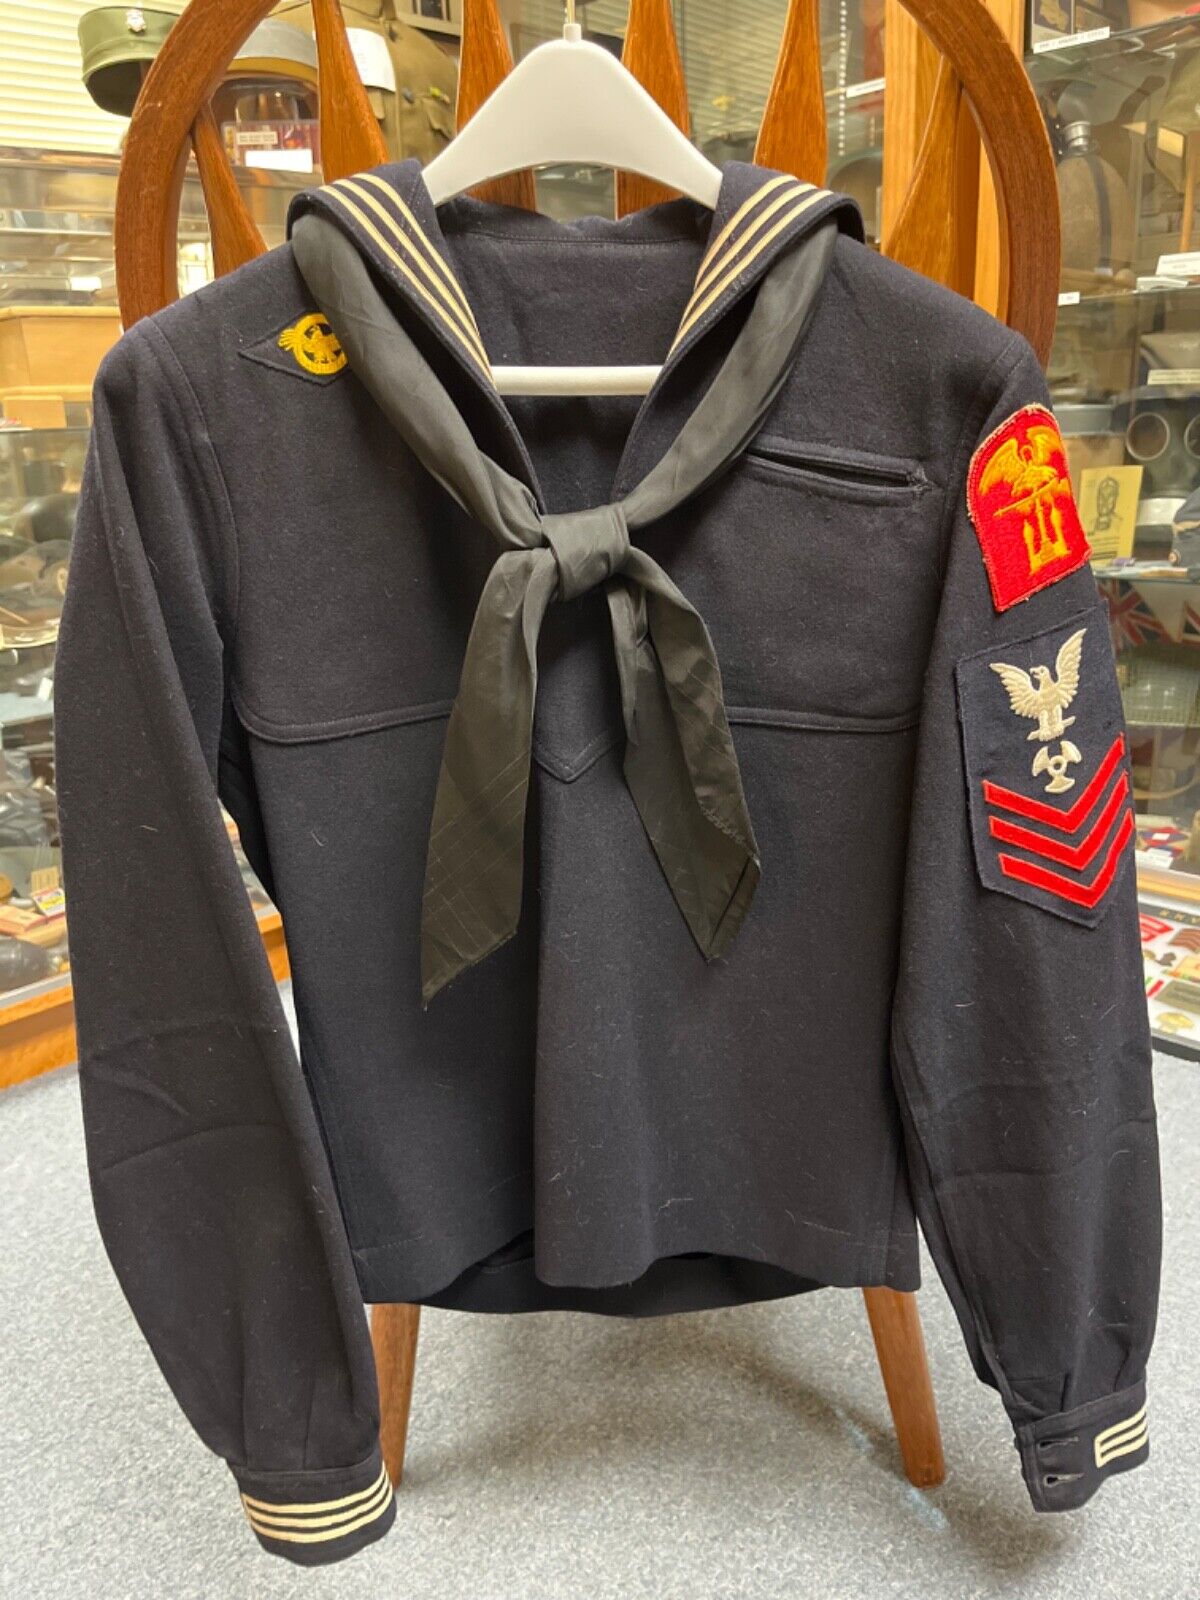 US Navy, World War II Blue Sailors Uniform Smock with Amphibious Assault Patch